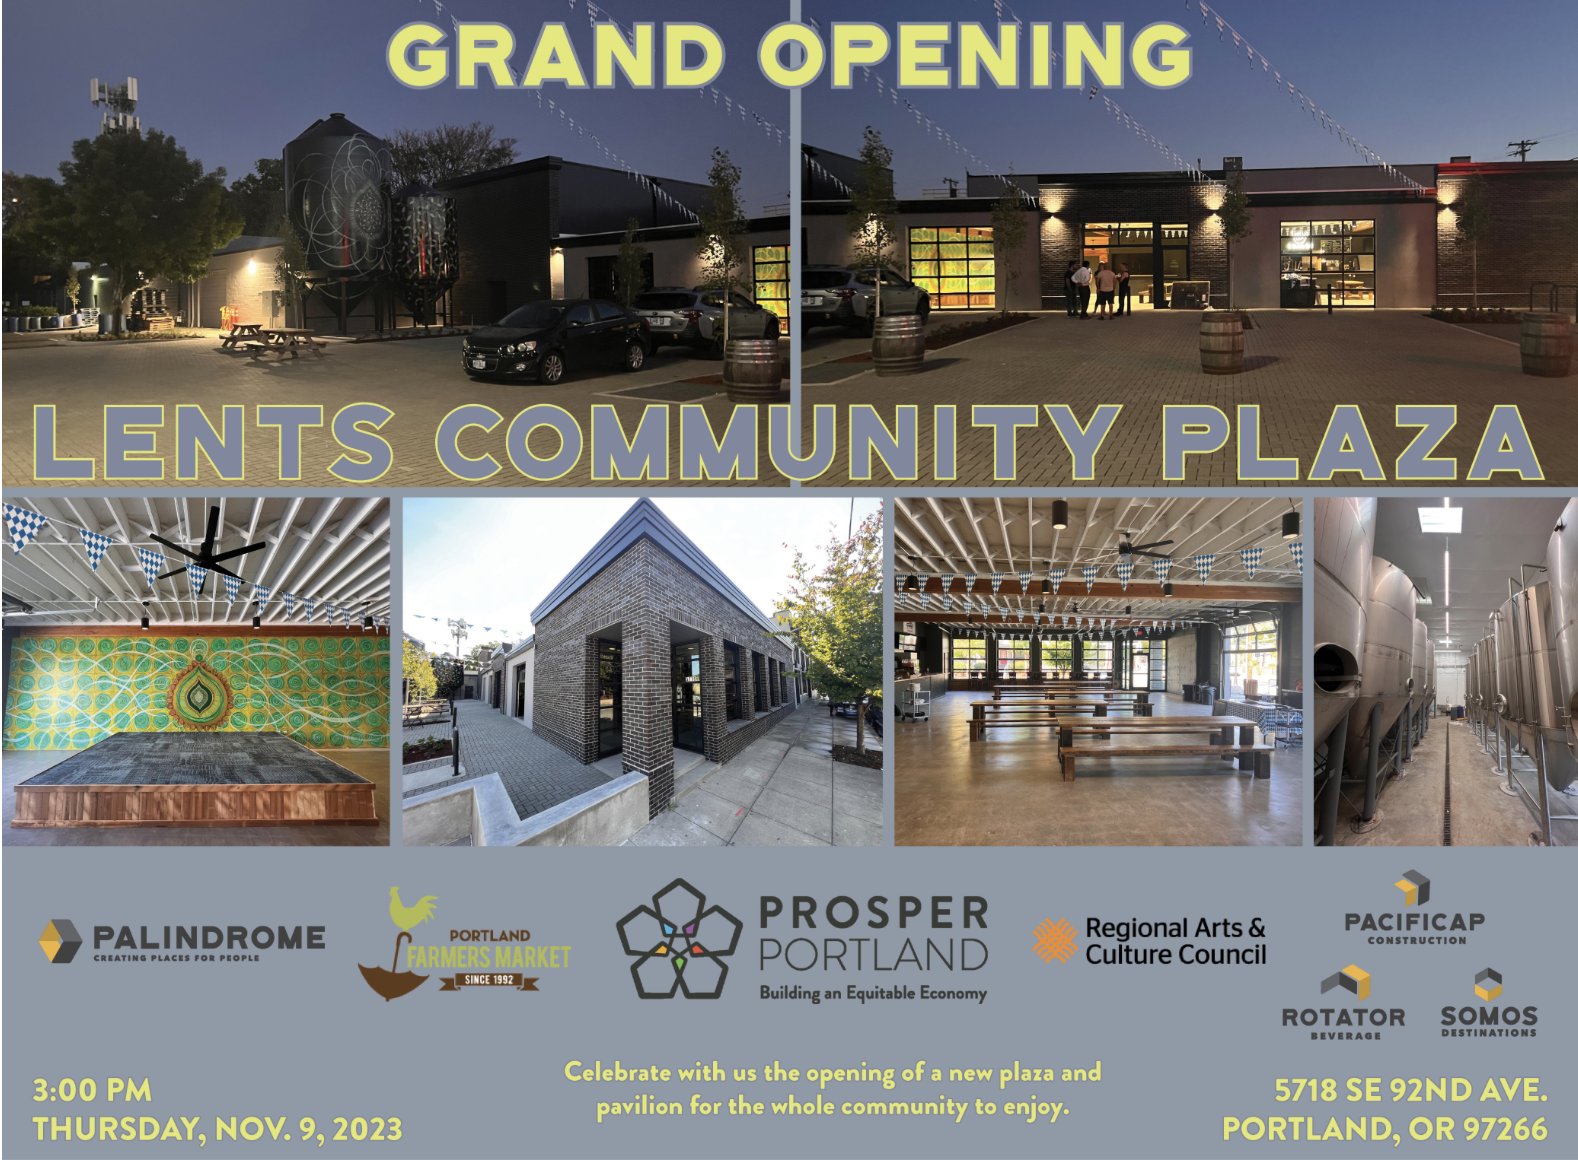 Lents Community Plaza celebrates grand opening